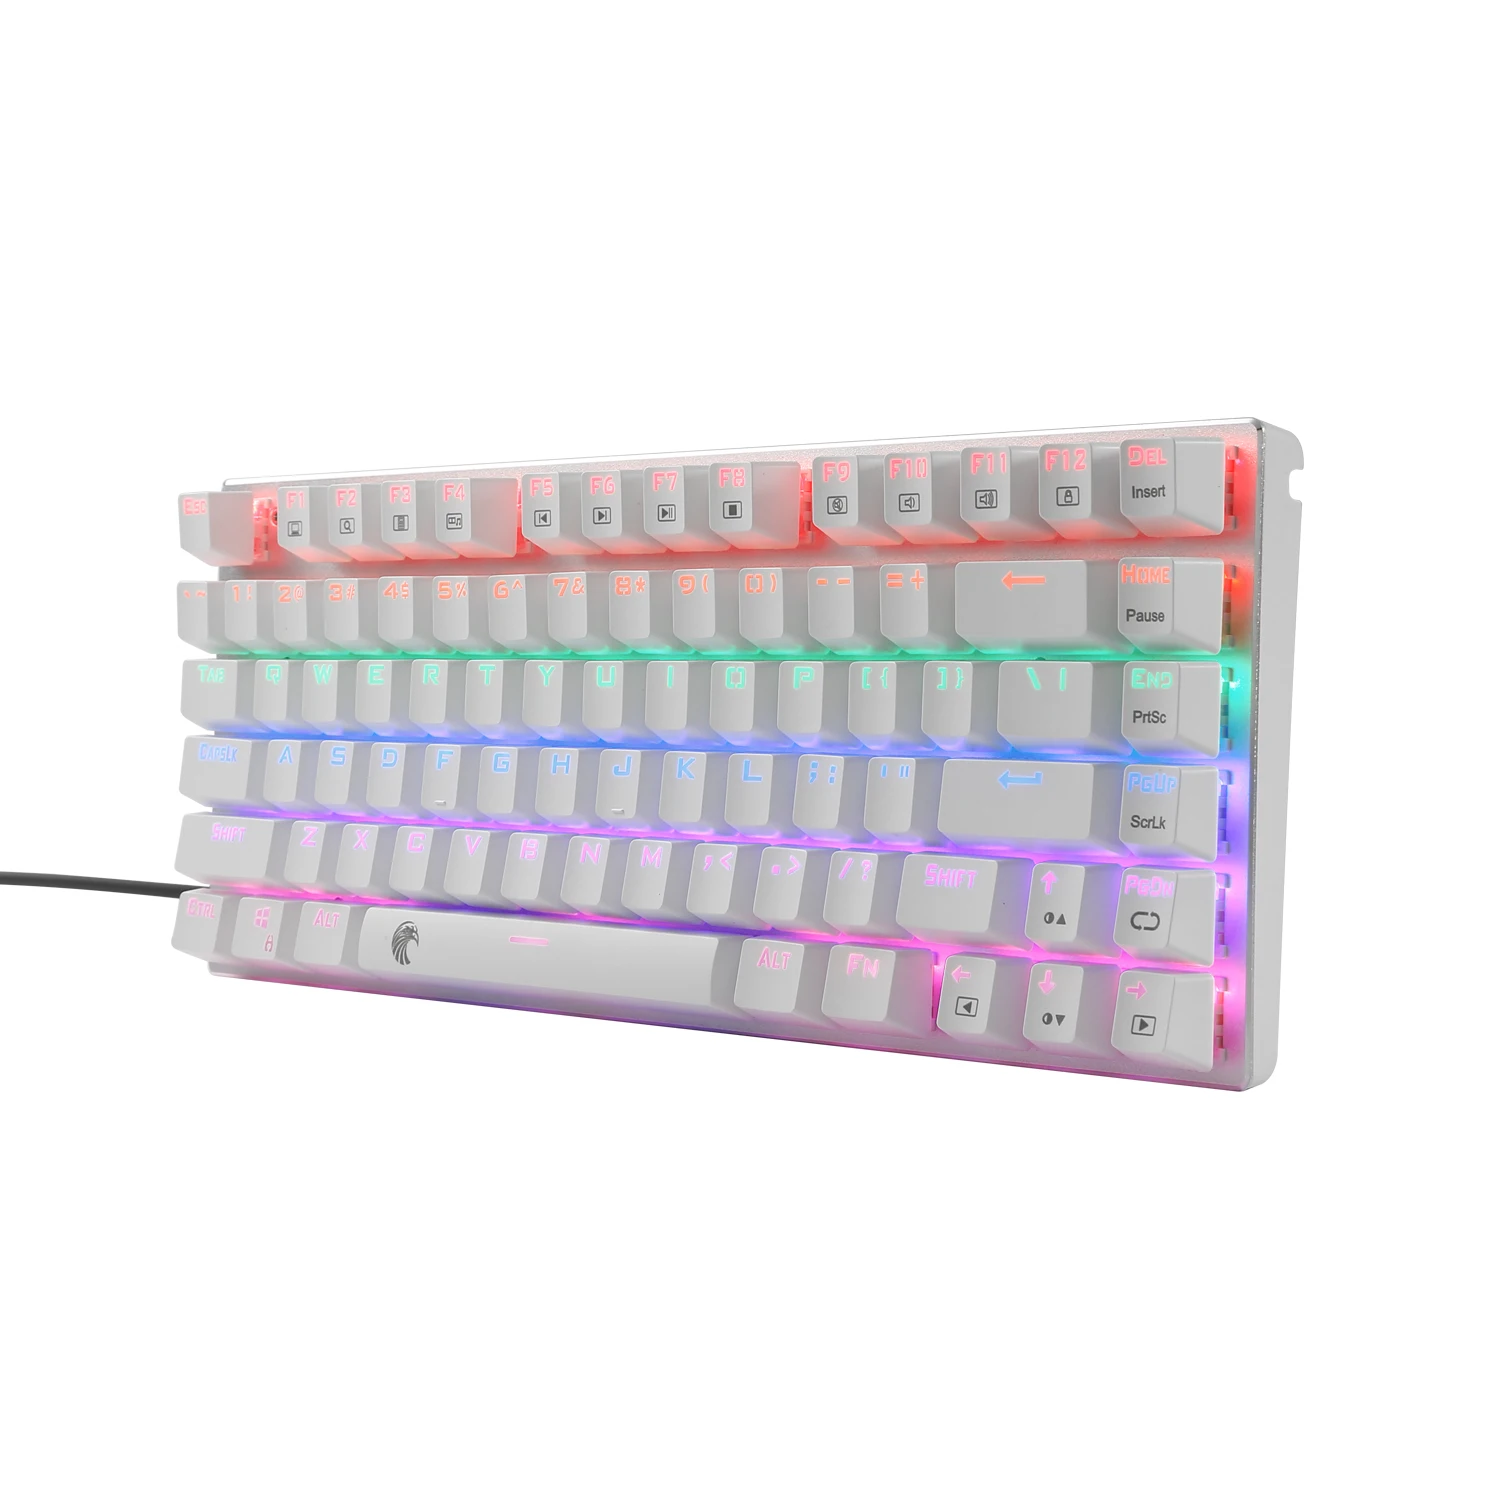 Z88 светодиодный мини-механическая клавиатура с подсветкой компактный эргономичный дизайн 81 клавиша маленькая алюминиевая клавиатура для игрового набора текста